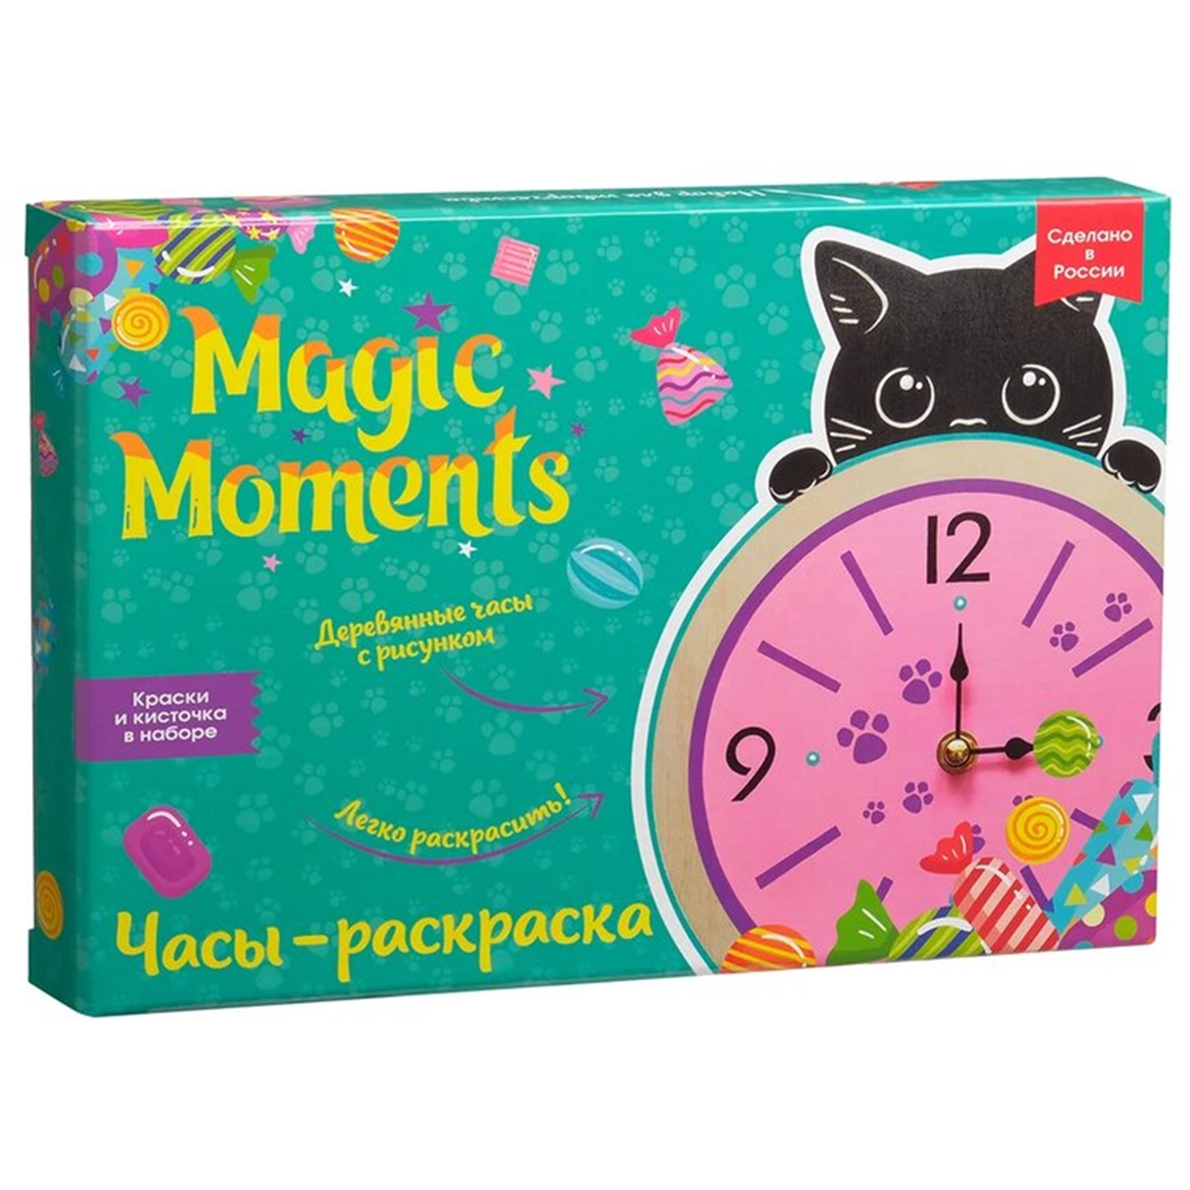 Сувенирный набор для творчества Magic Moments Часы-раскраска, Котик сувенир закладка magic time для книг из эпоксидного полимера 3 3 15см 75706